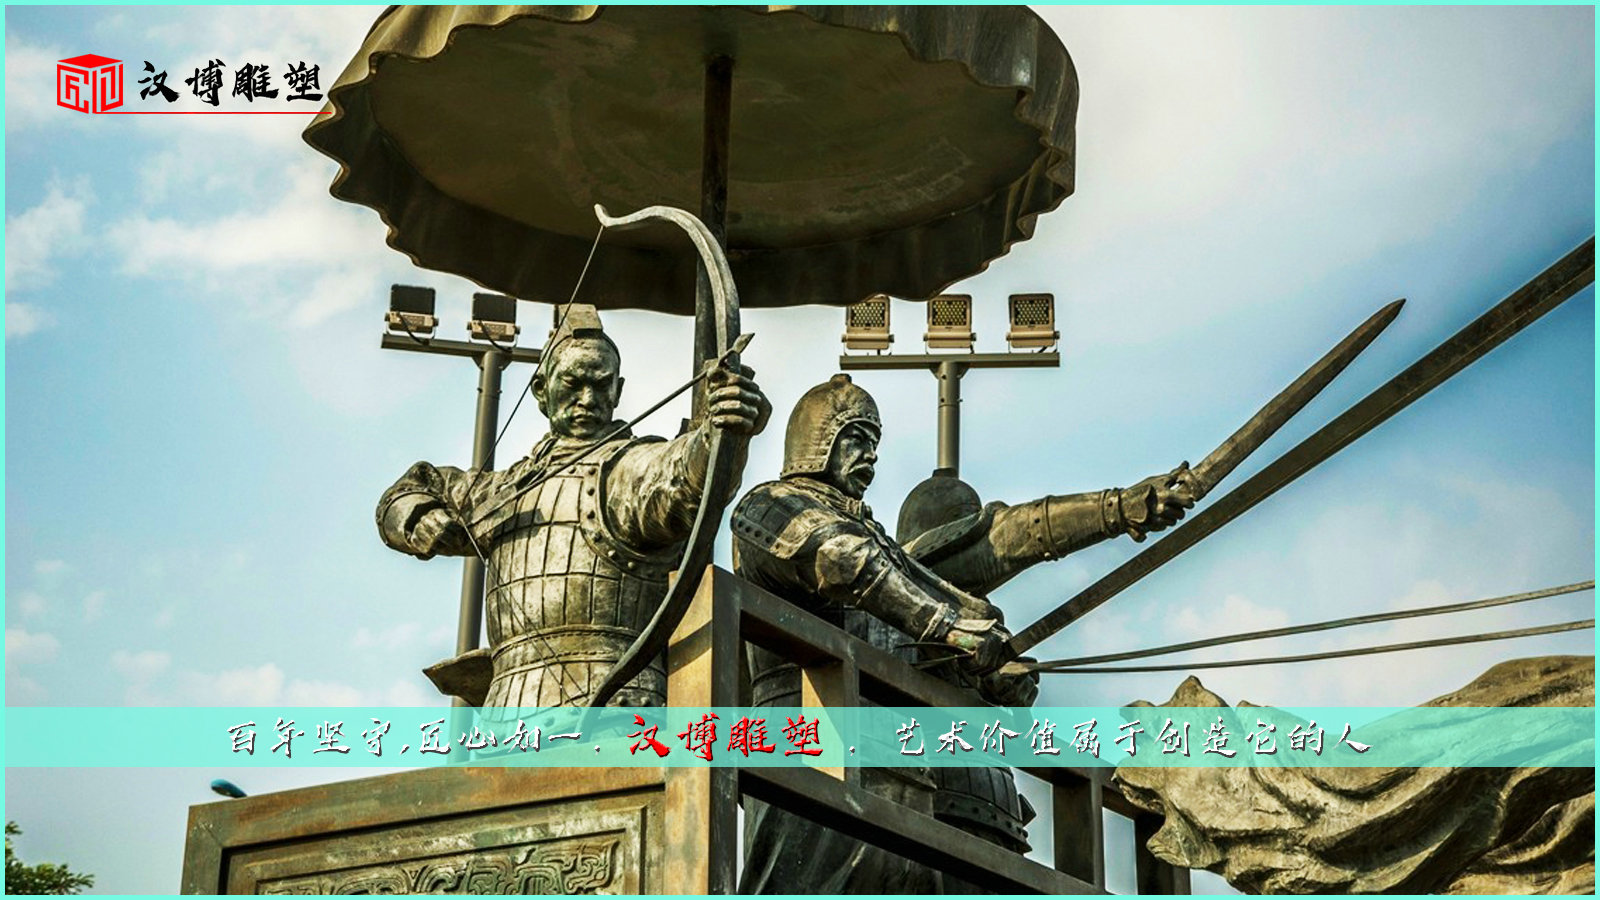 大型马拉车雕像,古代将军武将雕塑,战马战车雕塑